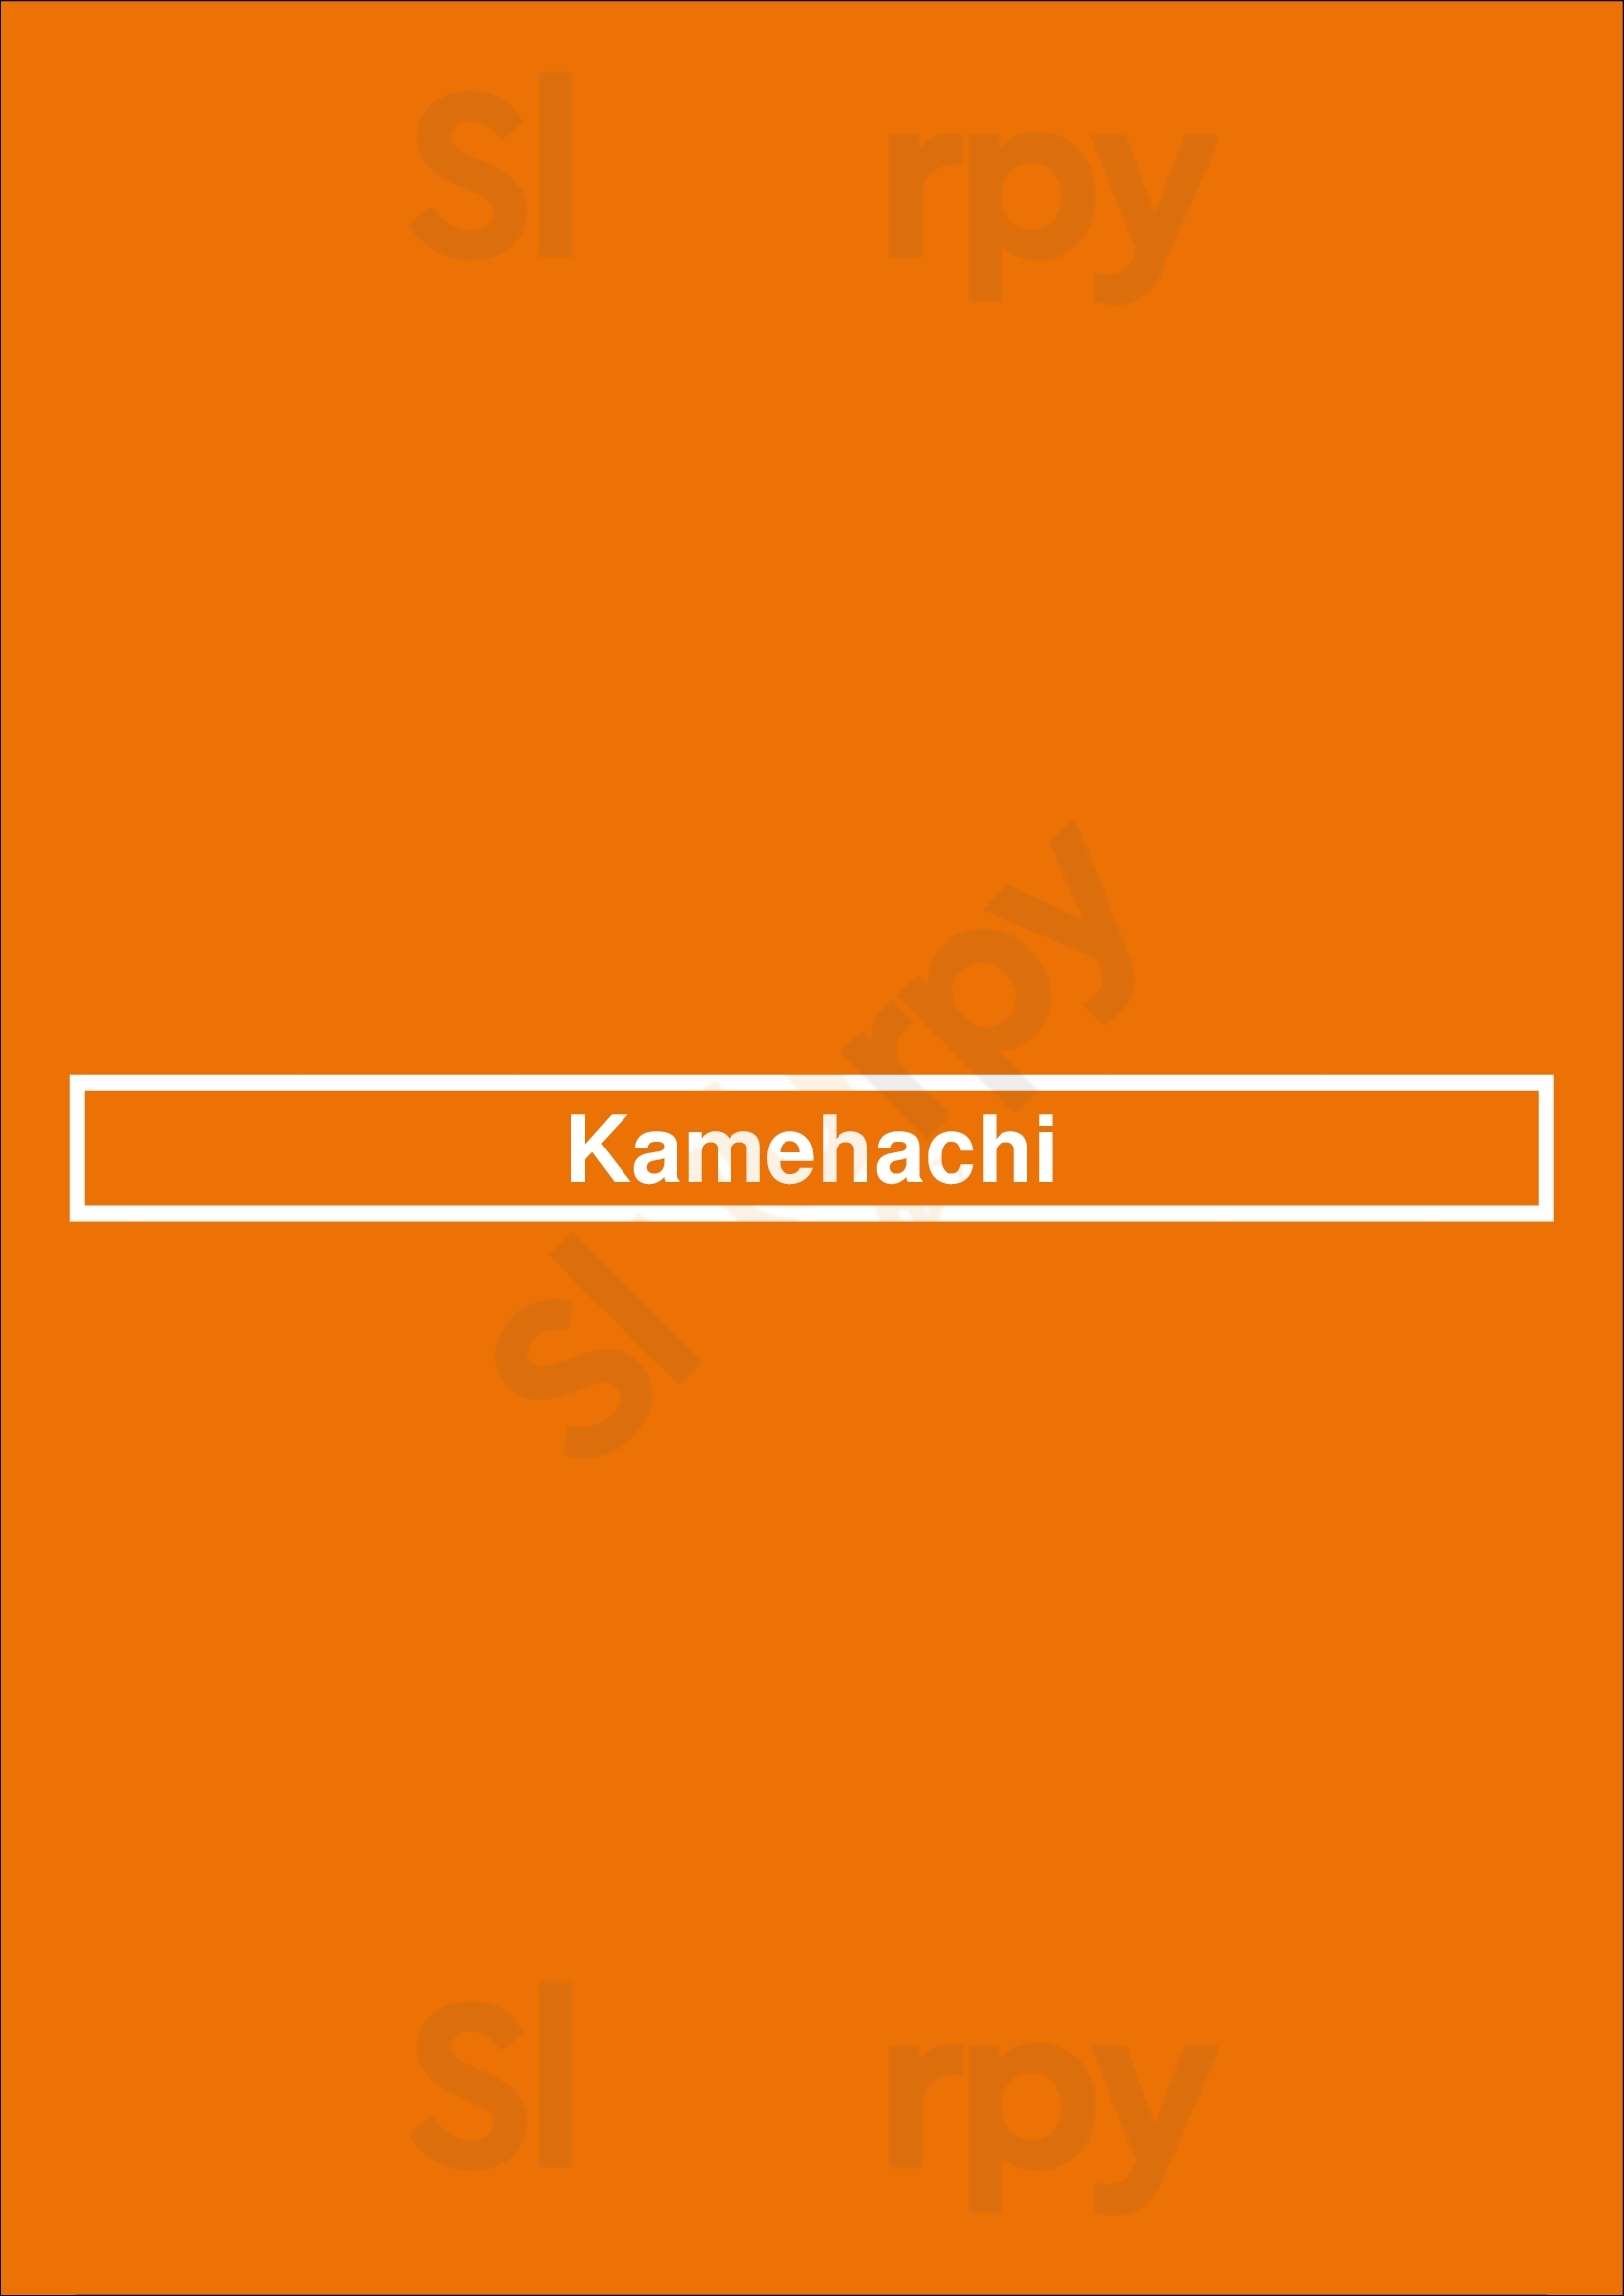 Kamehachi Chicago Menu - 1